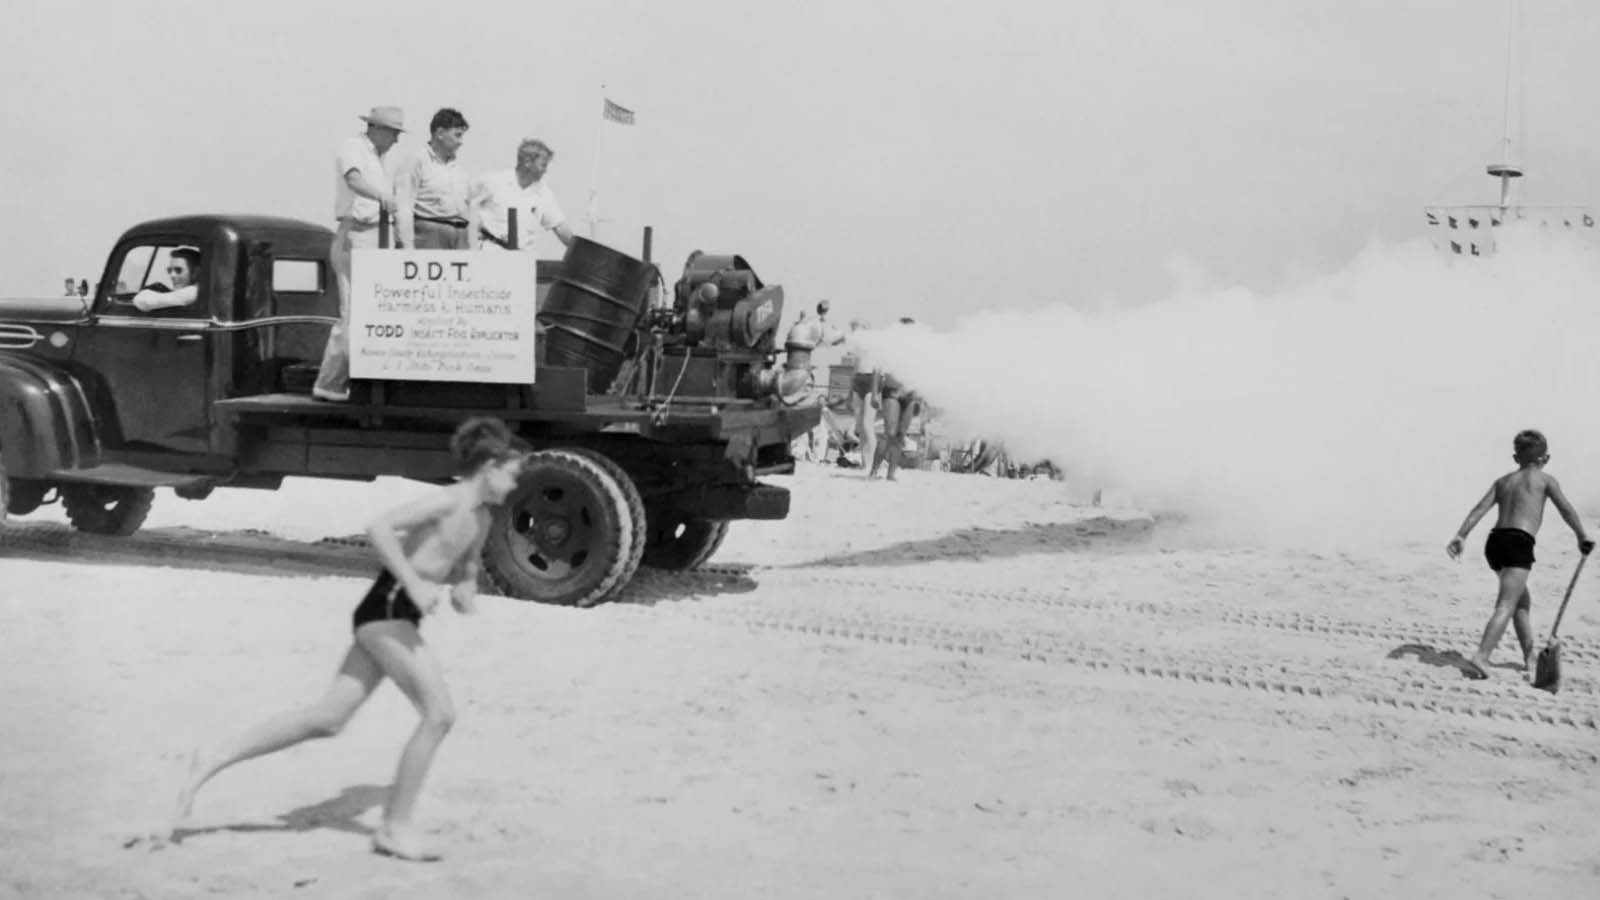 La danza urbana di operatori e camion che combattevano le zanzare nell'epoca del DDT